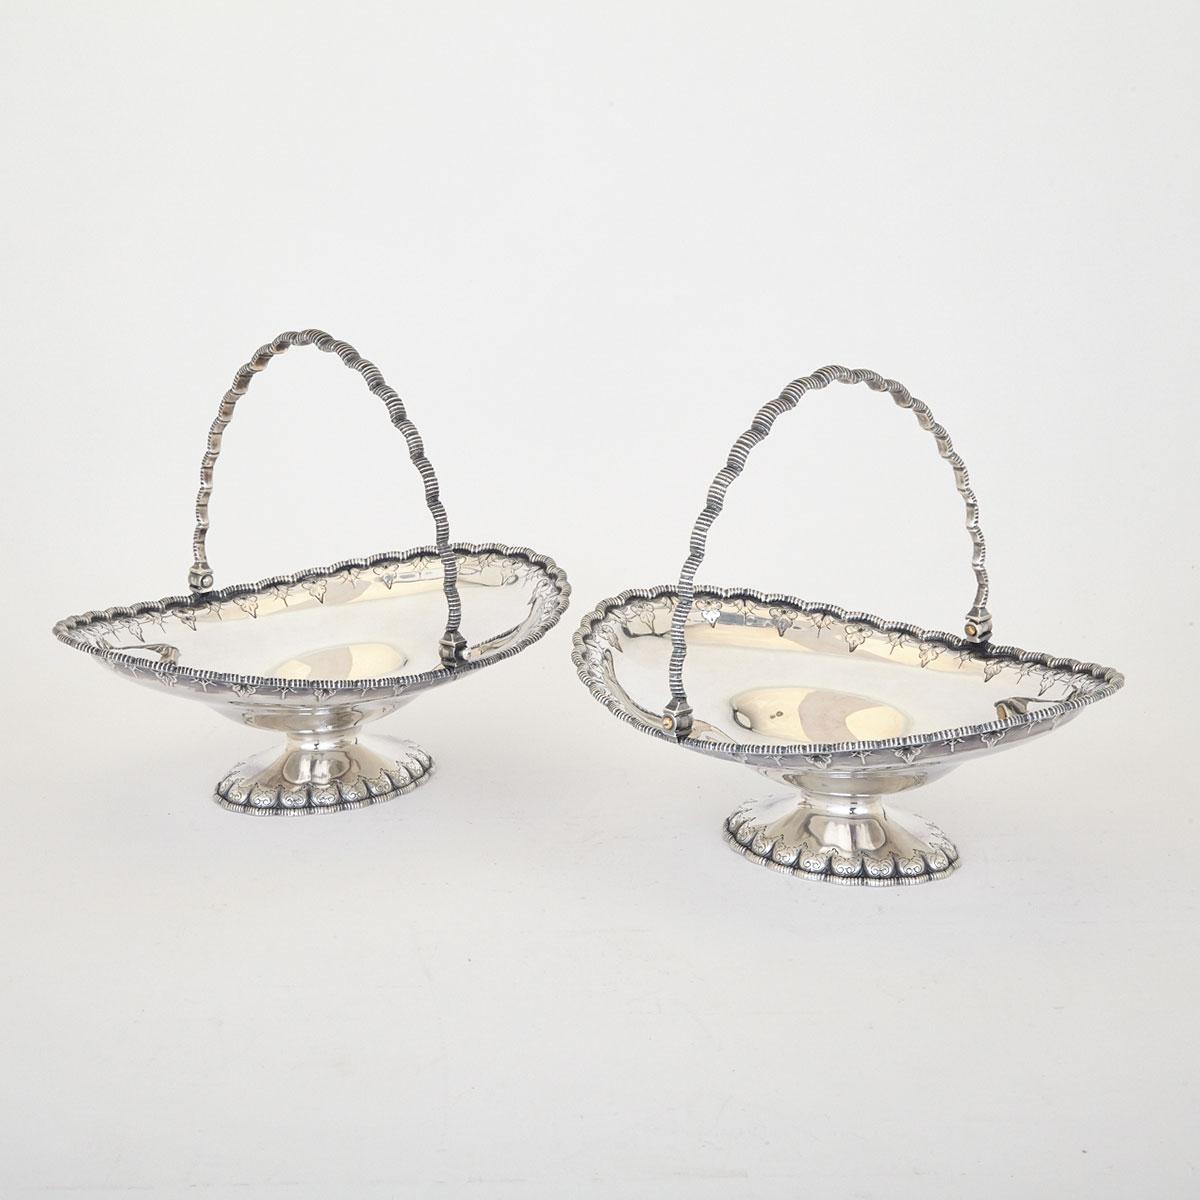 Pair of American Silver Cake Baskets, Grosjean & Woodward for Tiffany & Co., New York, N.Y., c.1854